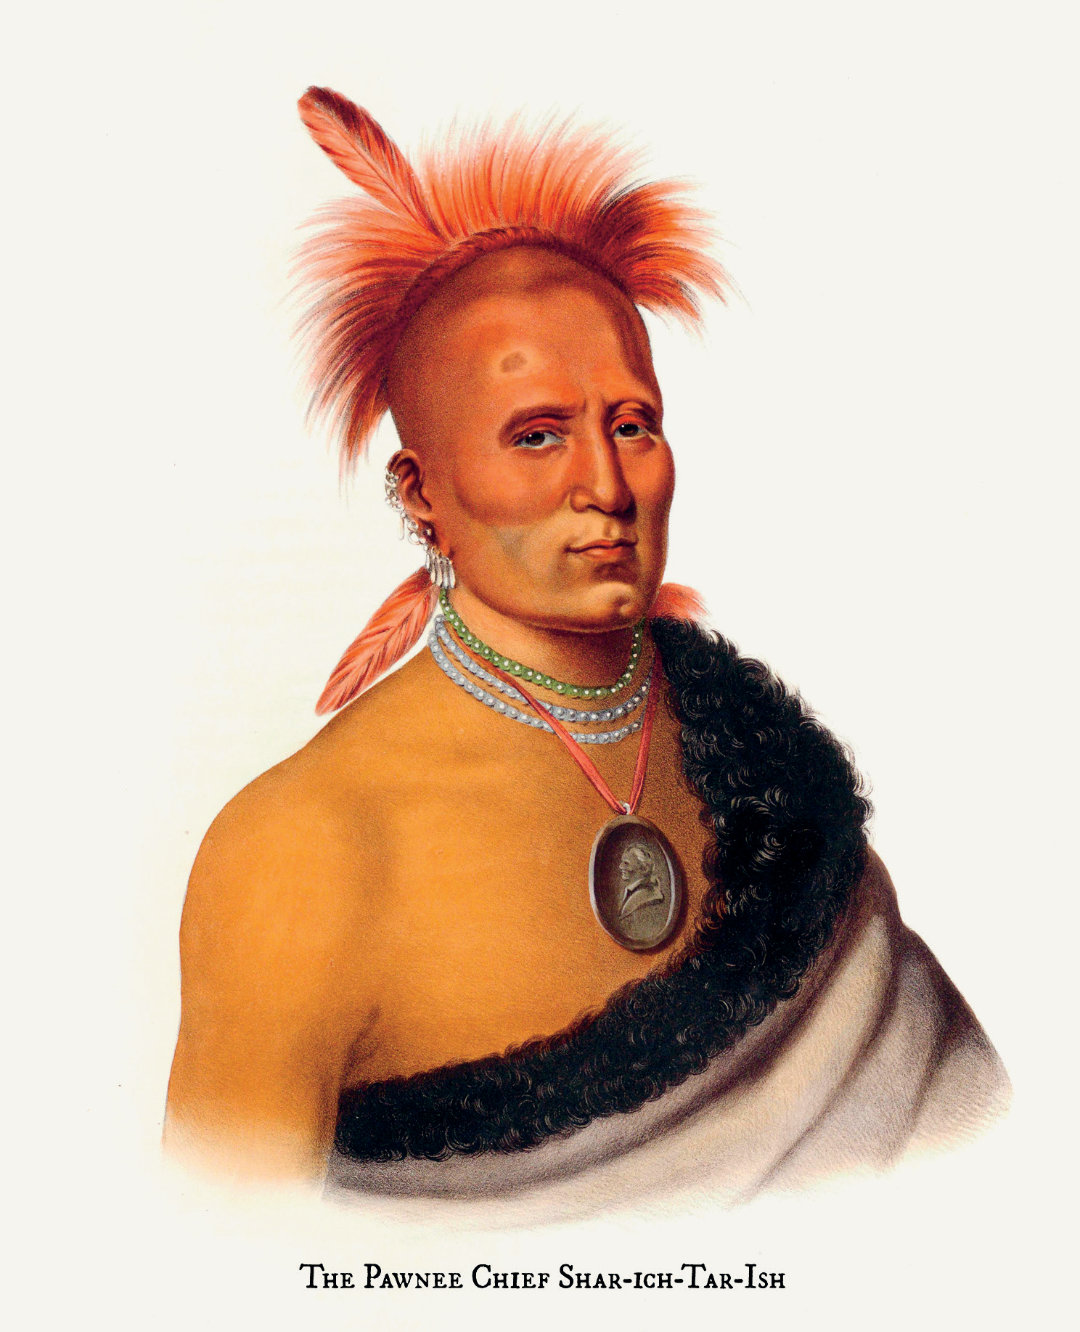 The Pawnee Chief Share-Ich-Tar-Ish